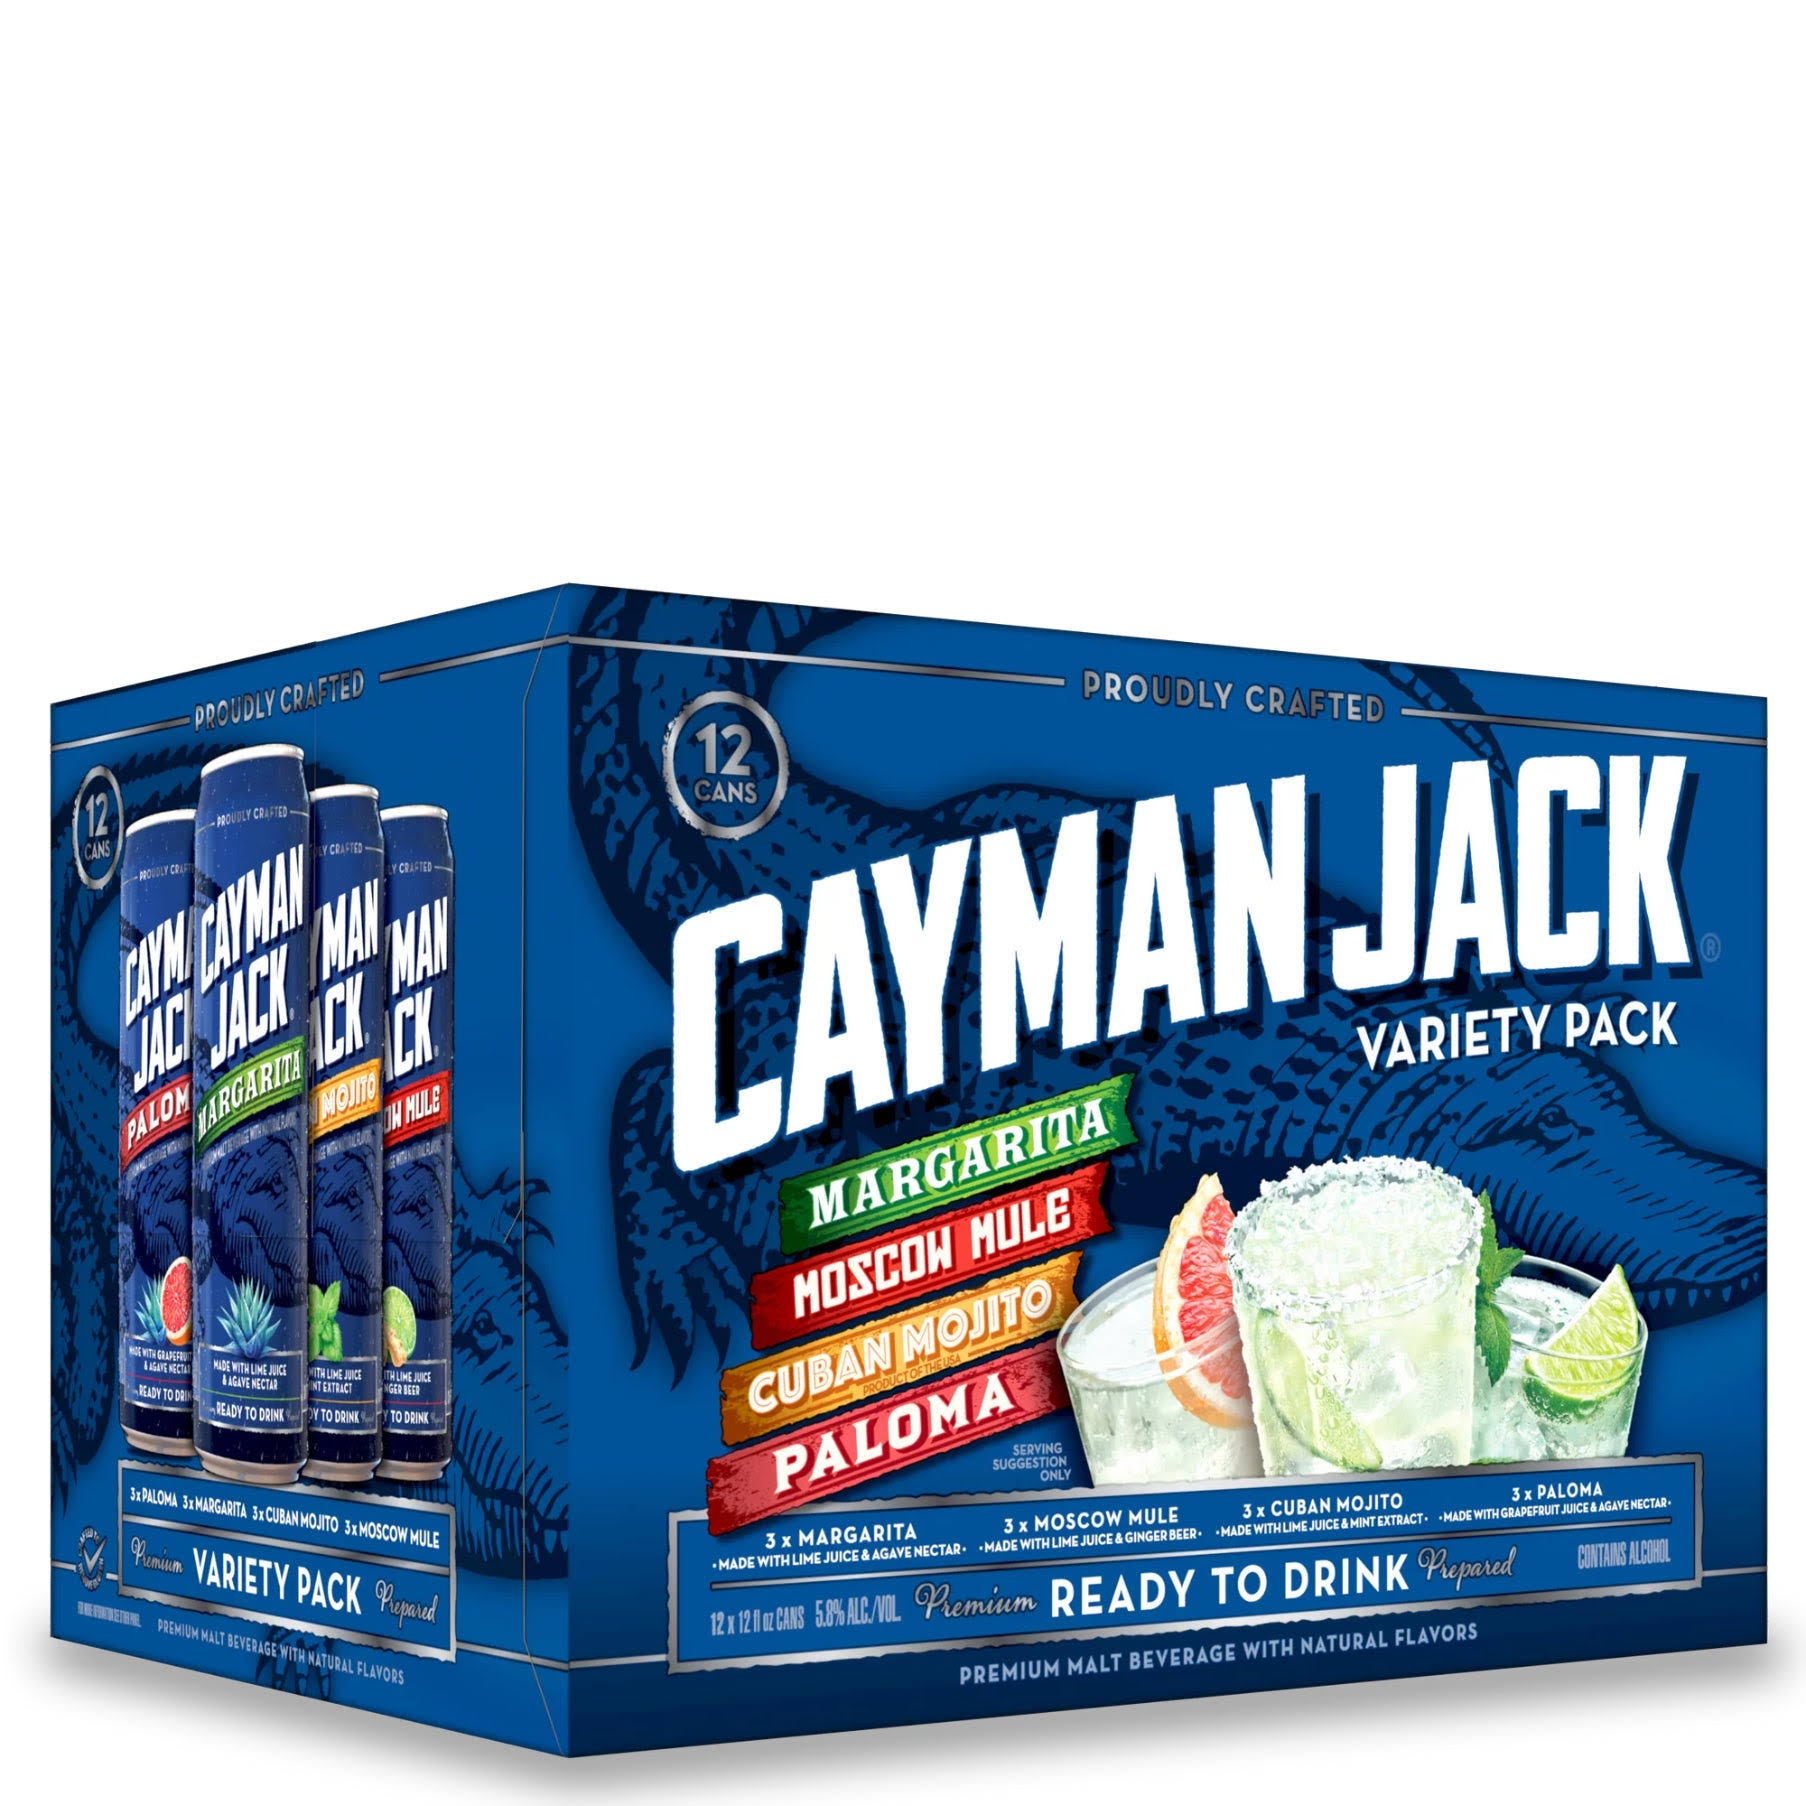 Cayman Jack Cocktails, Variety Pack - 12 pack, 12 fl oz cans